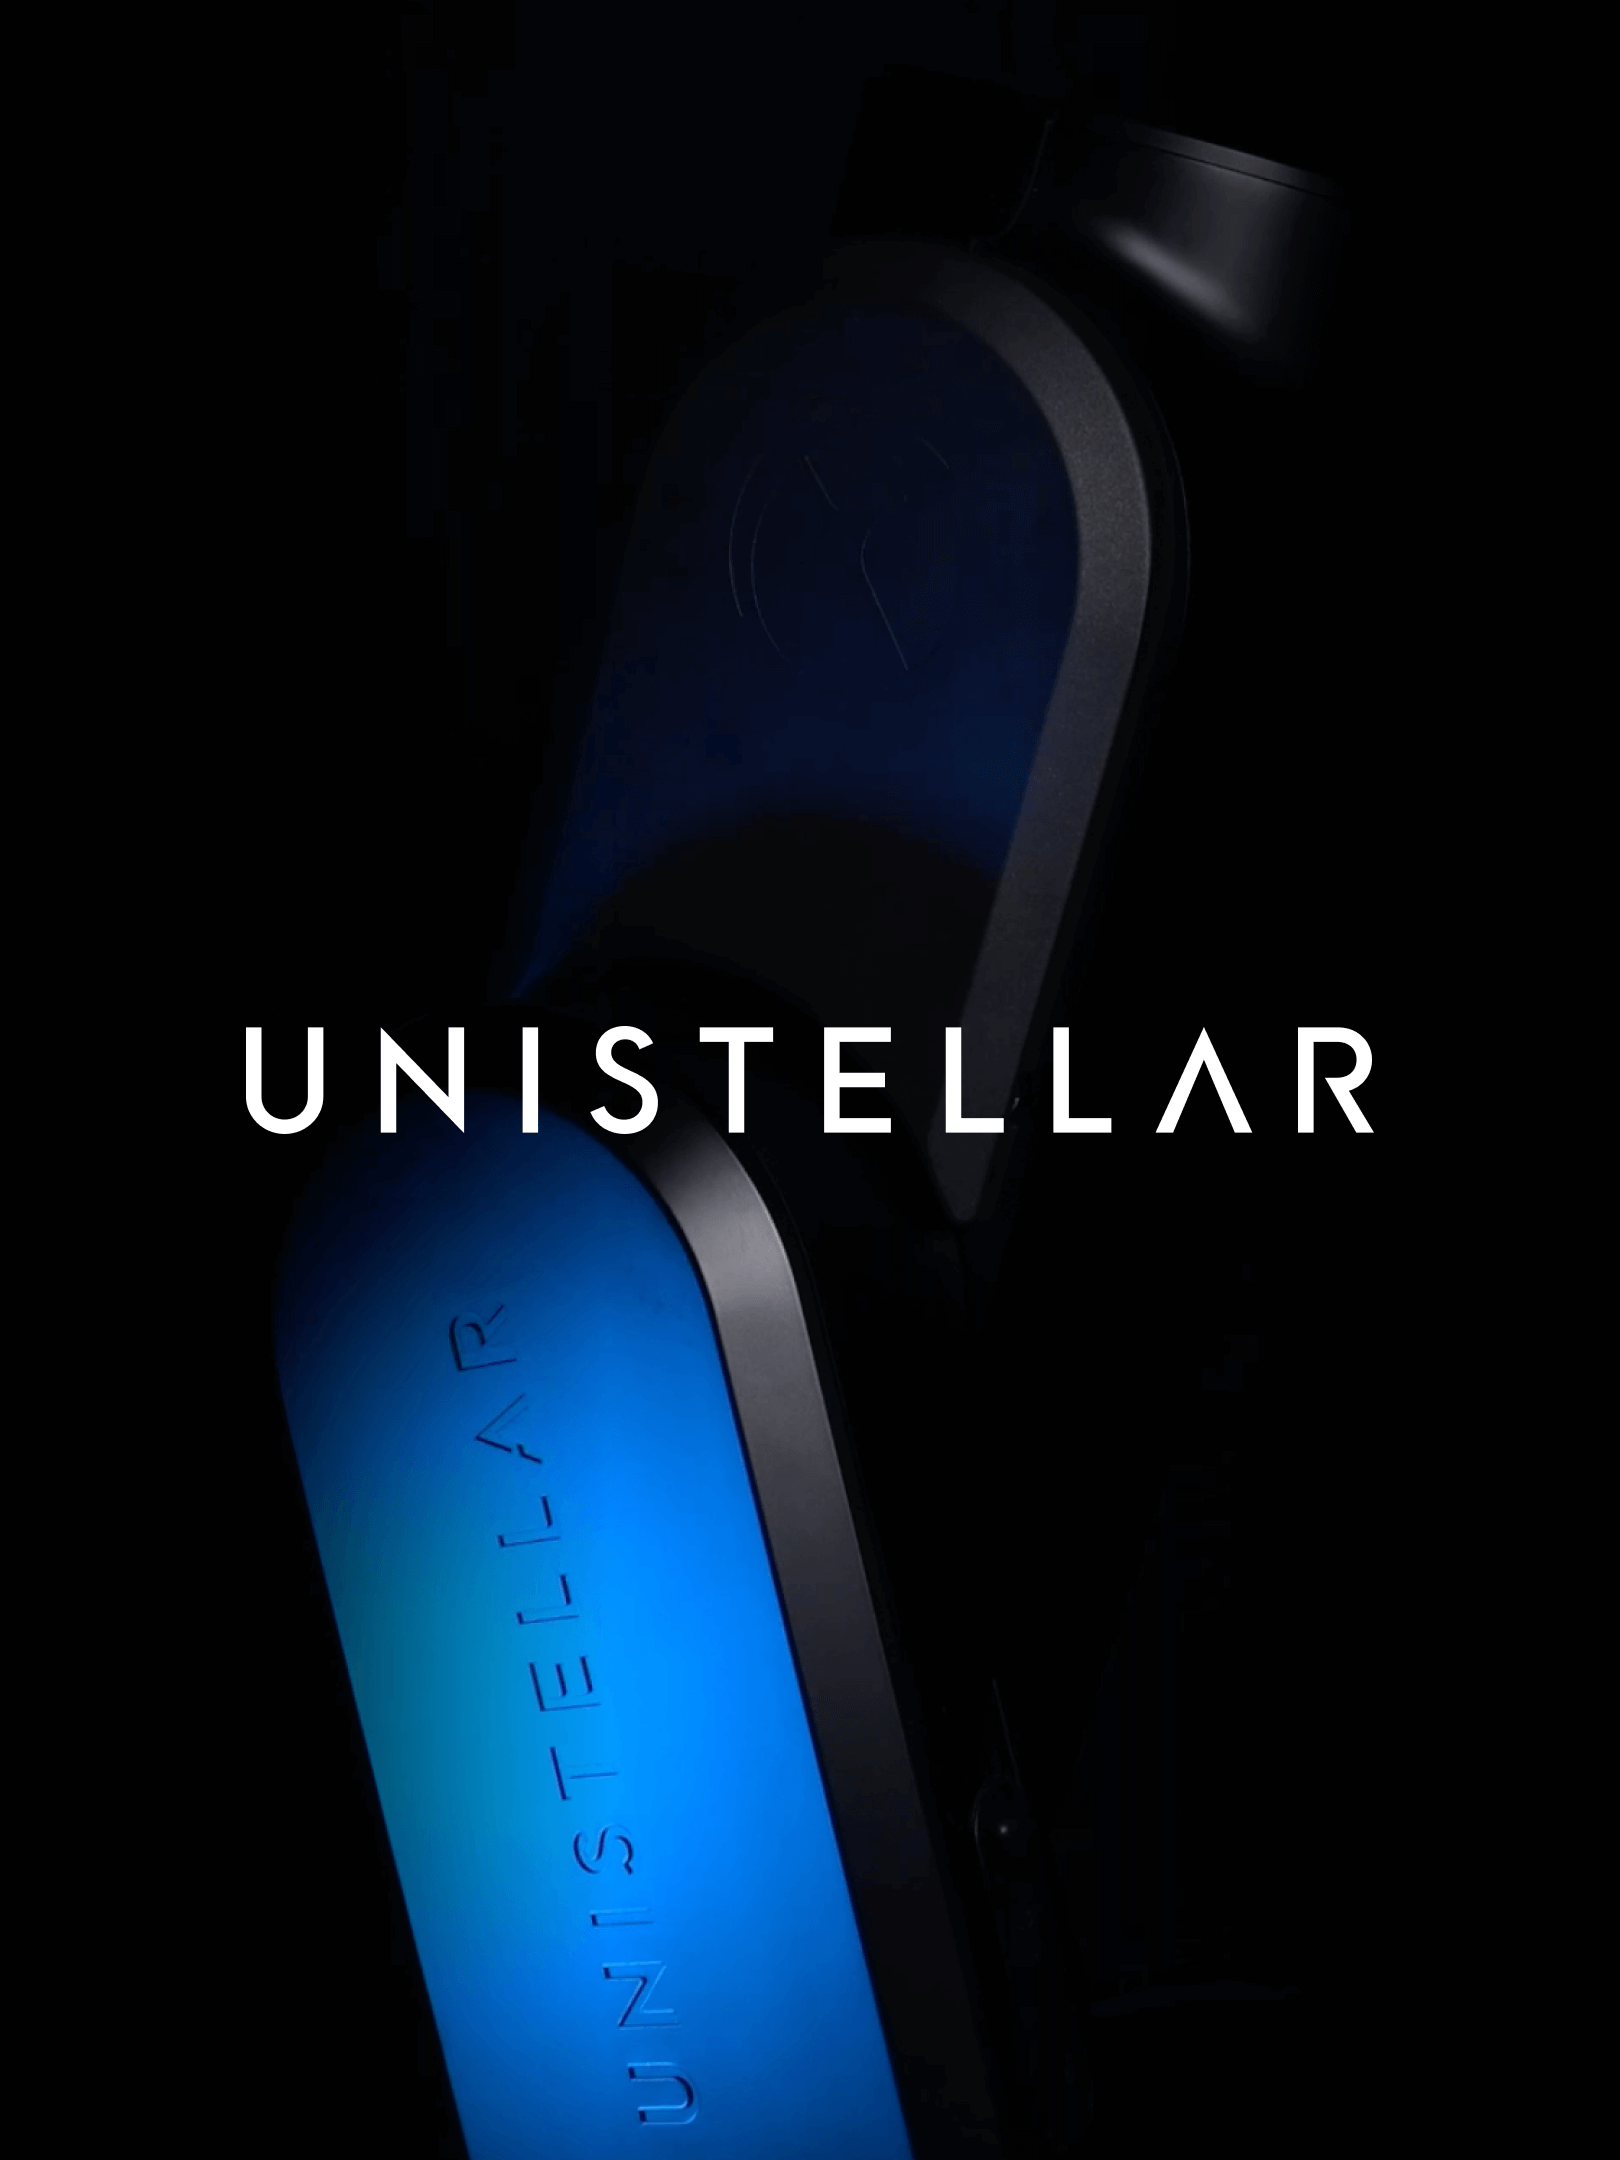 Unistellar - Close up télescope fond noir bleuté avec logo devant